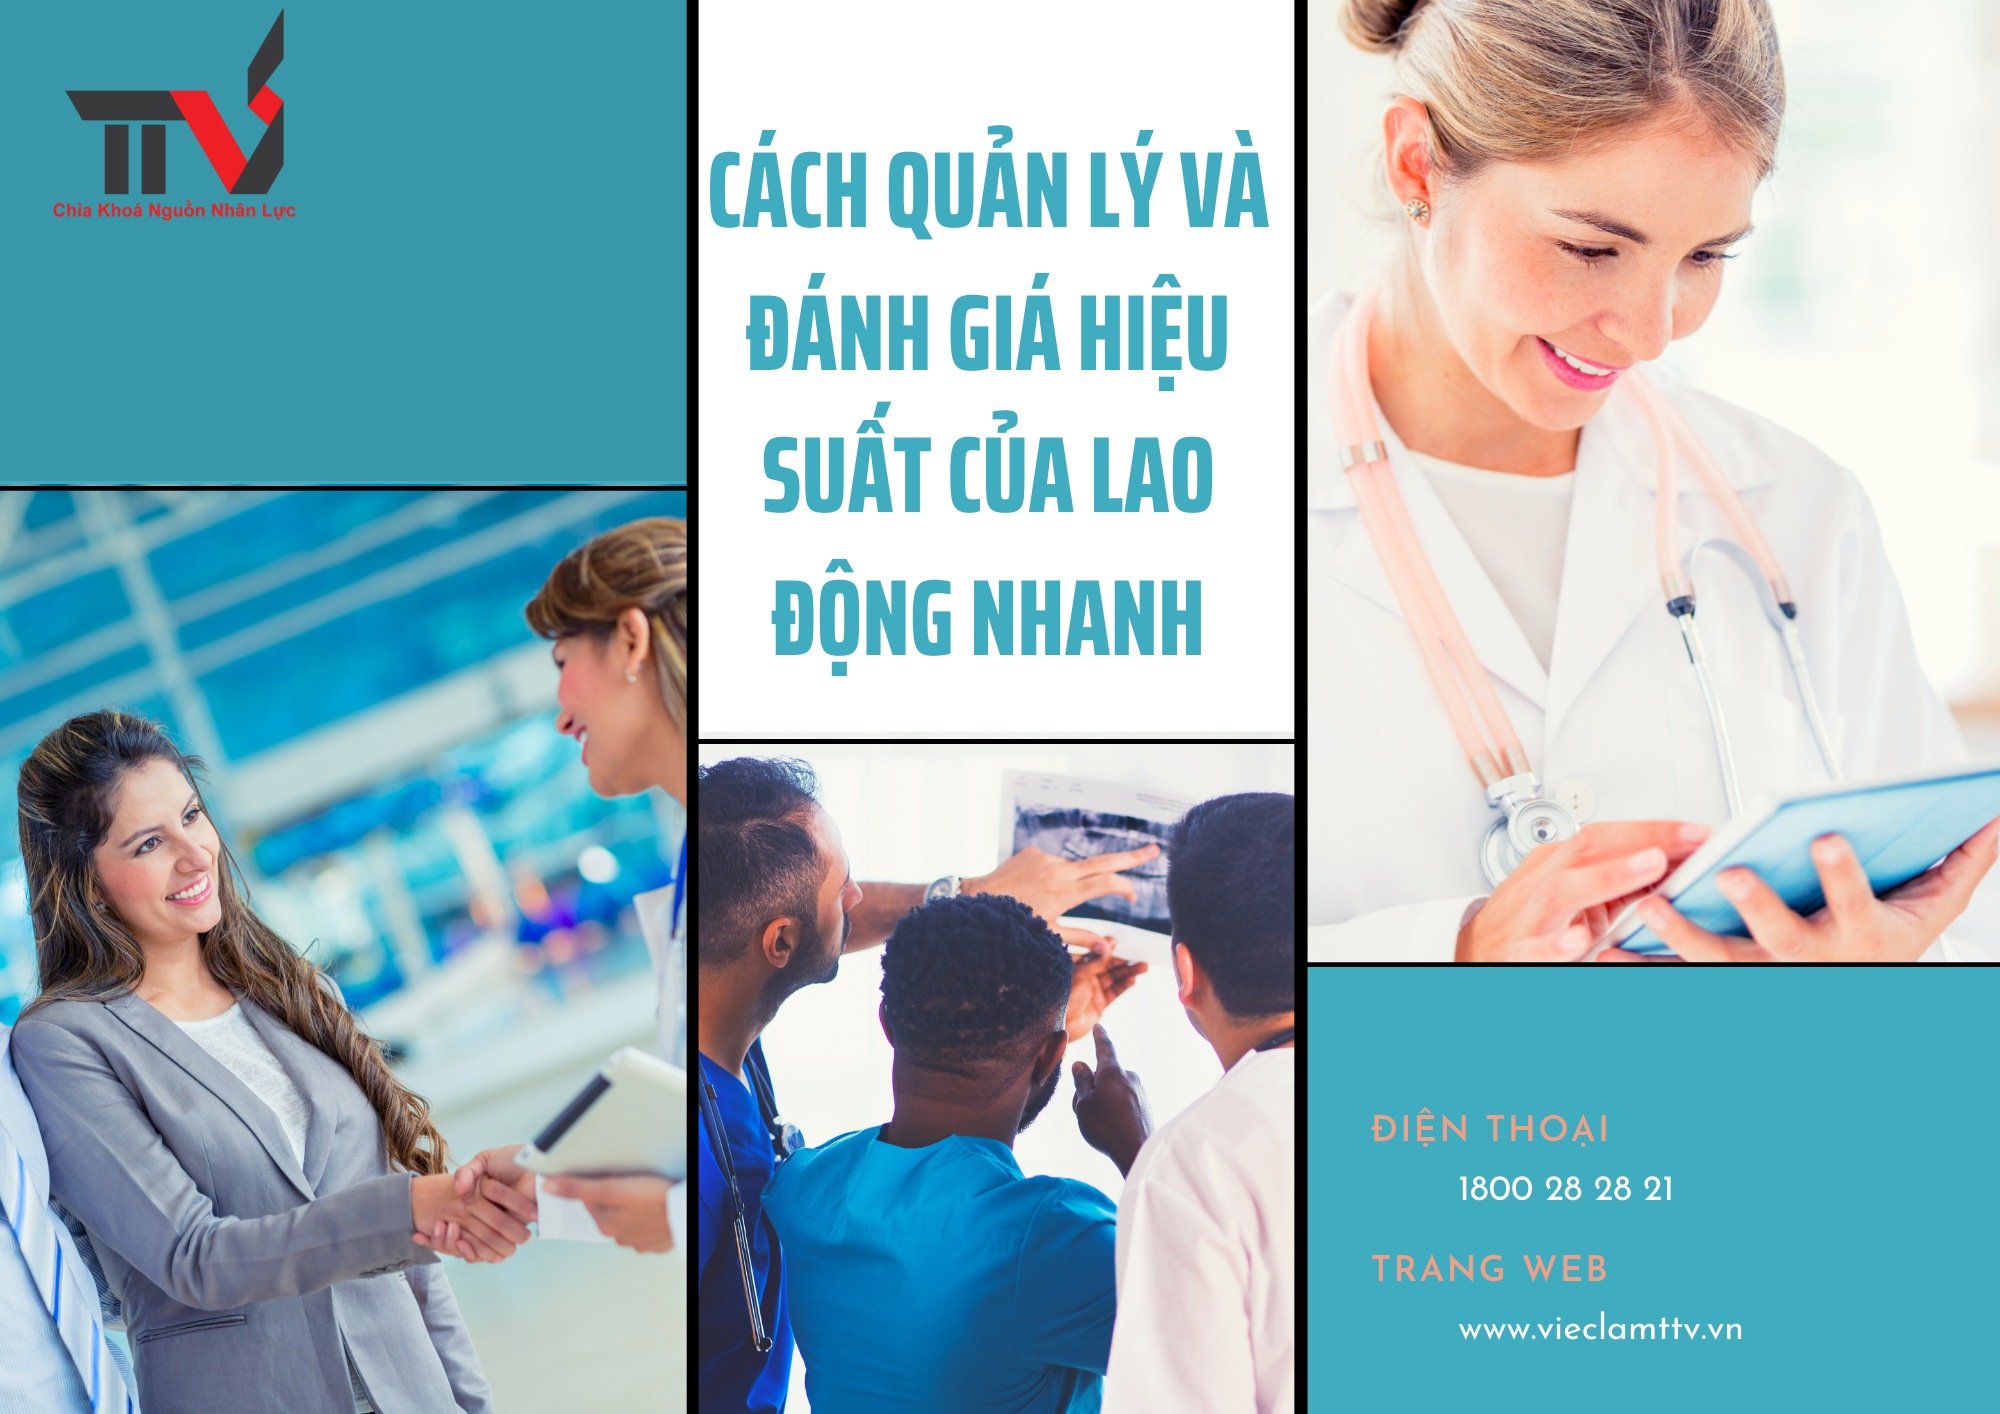 Cách quản lý và đánh giá hiệu suất của lao động nhanh tại khu vực Hồ Chí Minh, Bình Dương, Đồng Nai